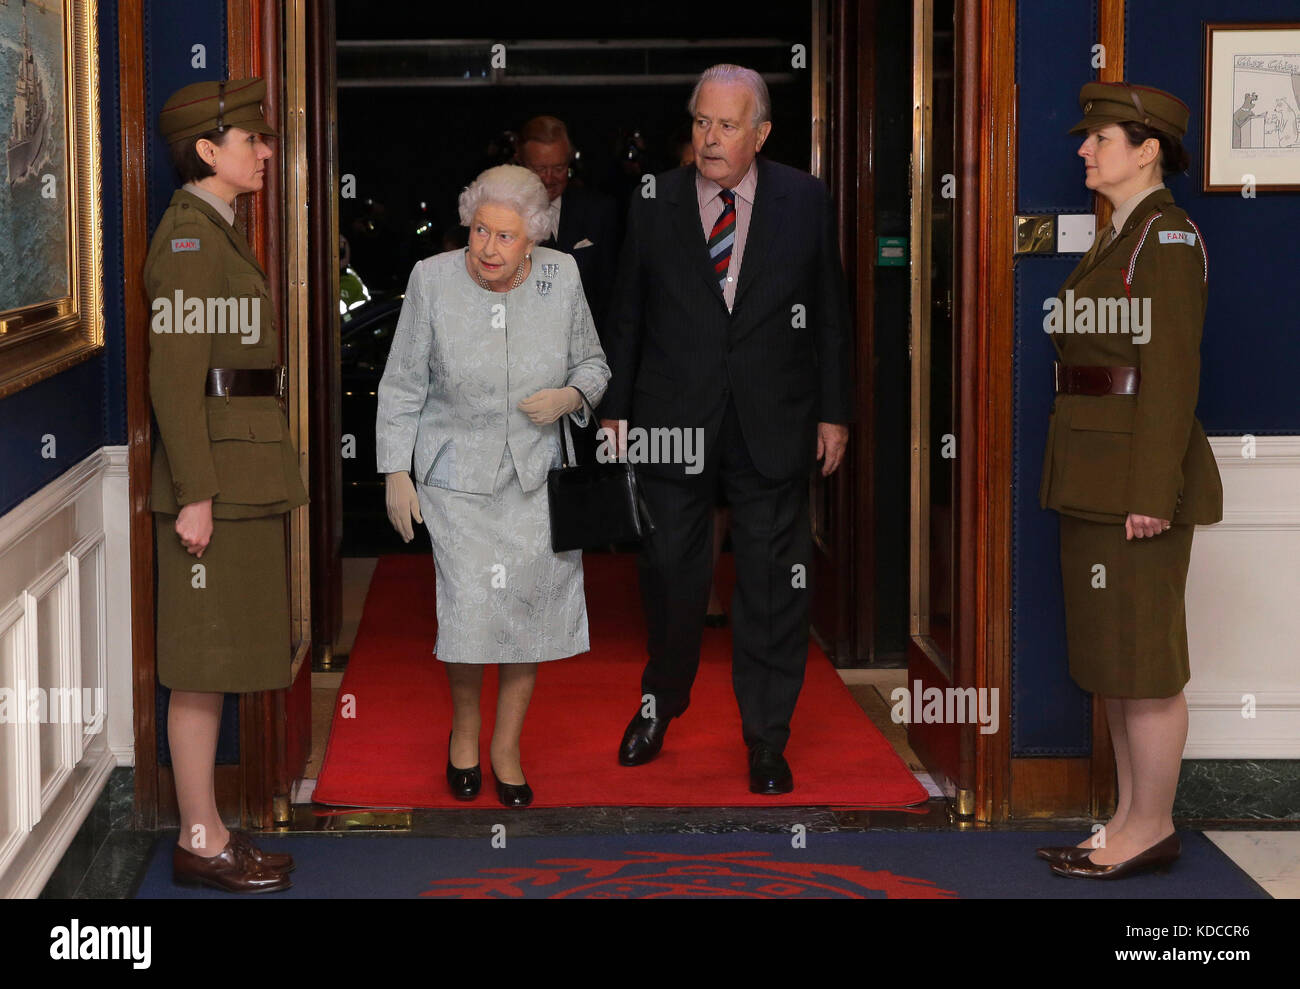 La reina Elizabeth II, acompañada por el coronel Ian Paterson, camina por dos mujeres vestidas como Yeomanry de primeros auxilios de la era de la Segunda Guerra Mundial durante una recepción en el Club del Ejército y la Marina en el centro de Londres, para conmemorar el centenario del Servicio de la Marina Real de Mujeres y de la Corporación del Ejército Auxiliar de Mujeres Foto de stock